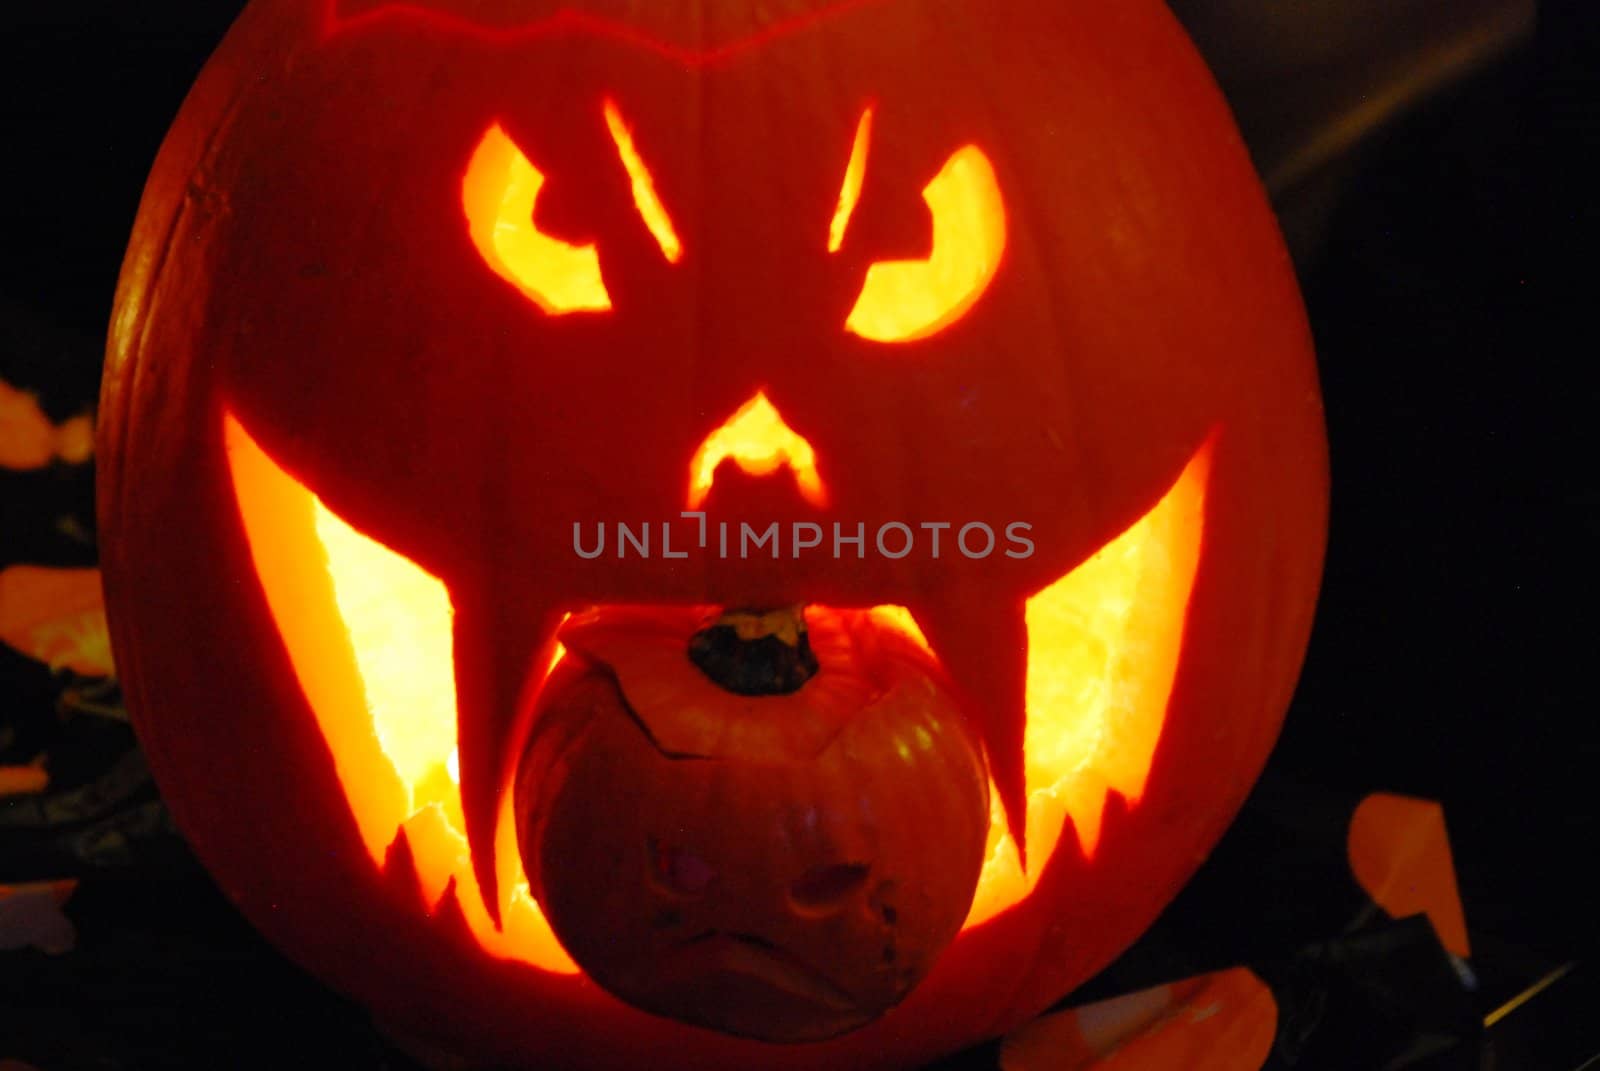 Peter pumpkin eater by seattlephoto